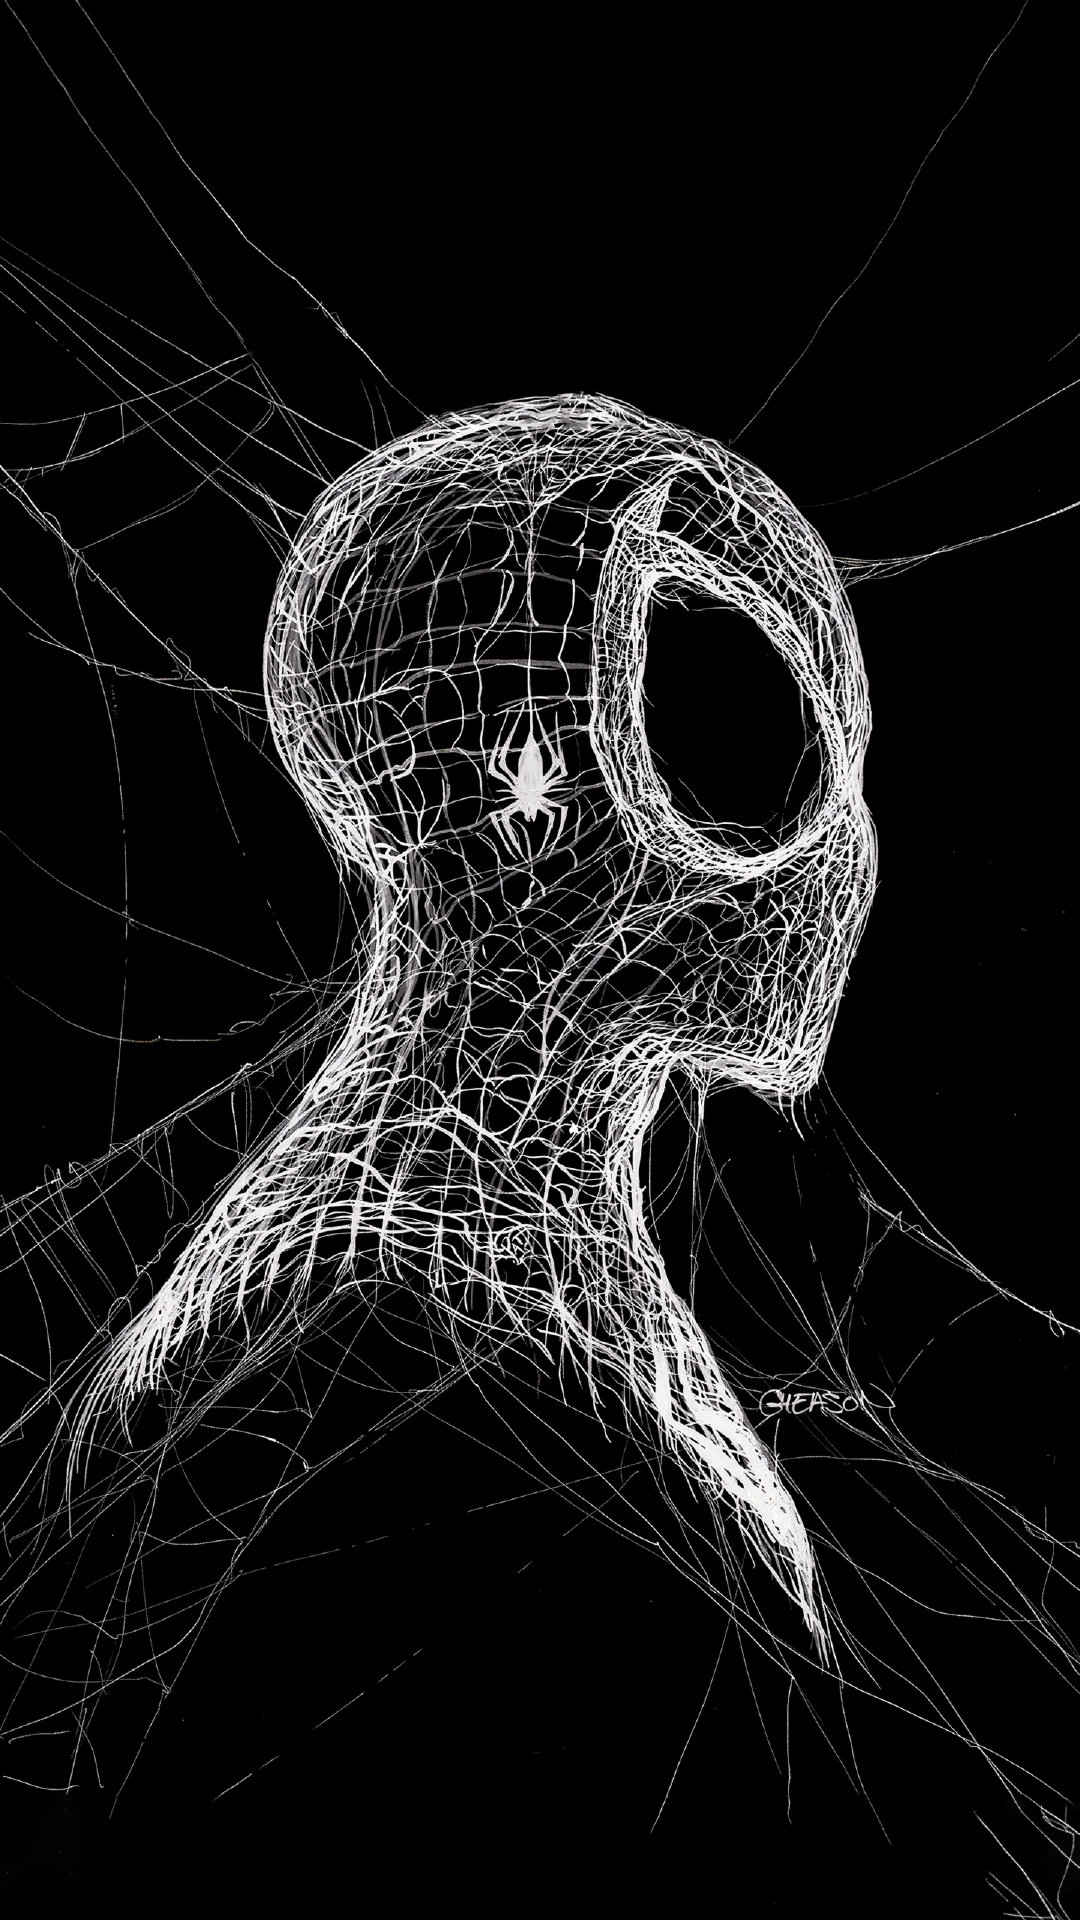 创意蜘蛛网构成的蜘蛛侠头像手机壁纸-